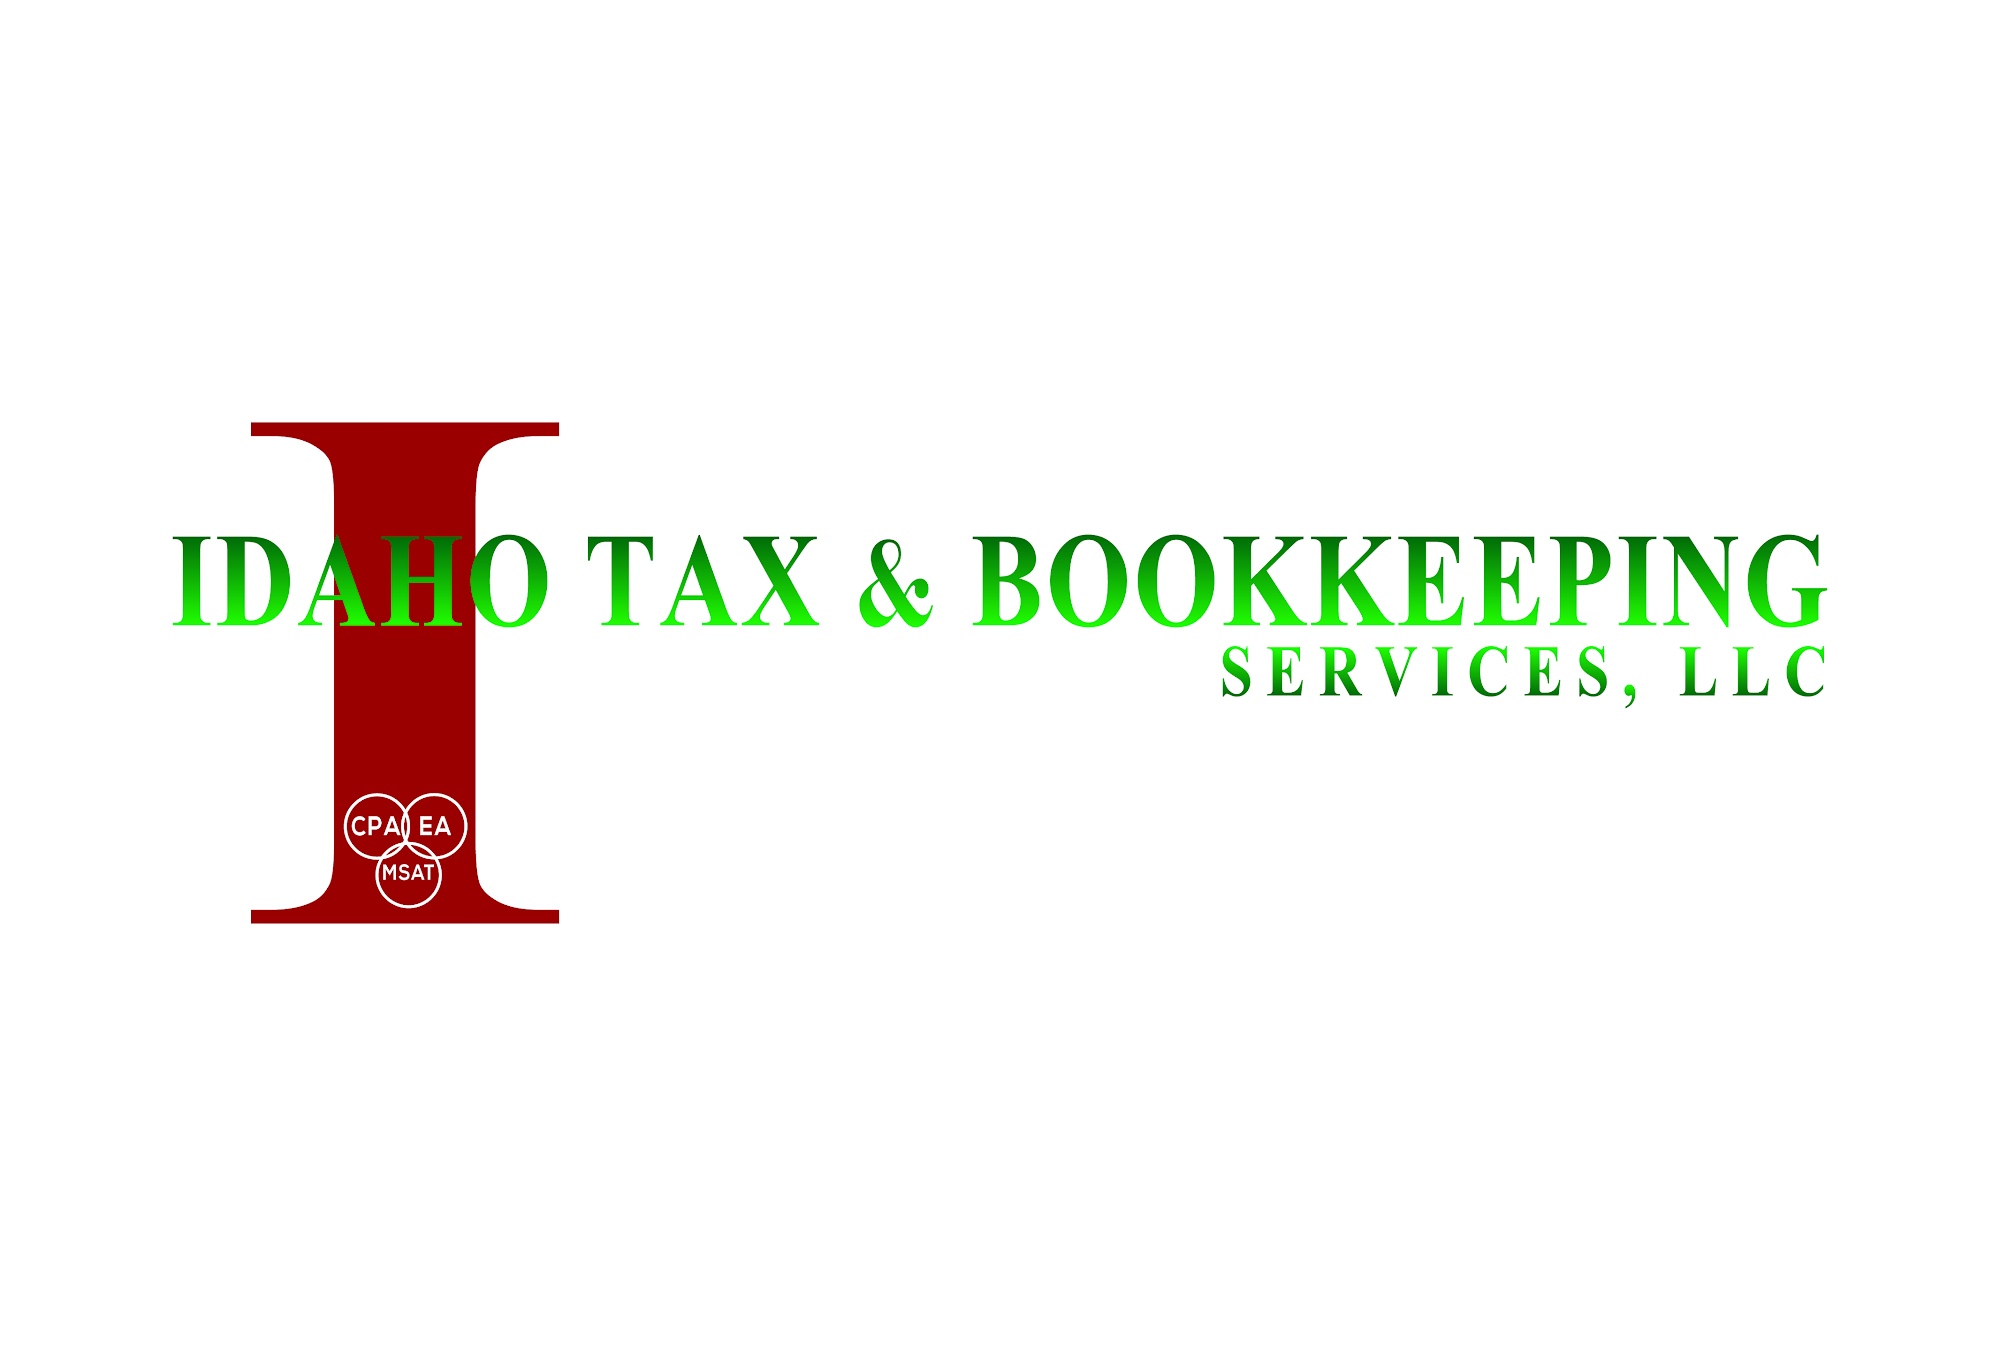 Idaho Tax & Bookkeeping Services, LLC